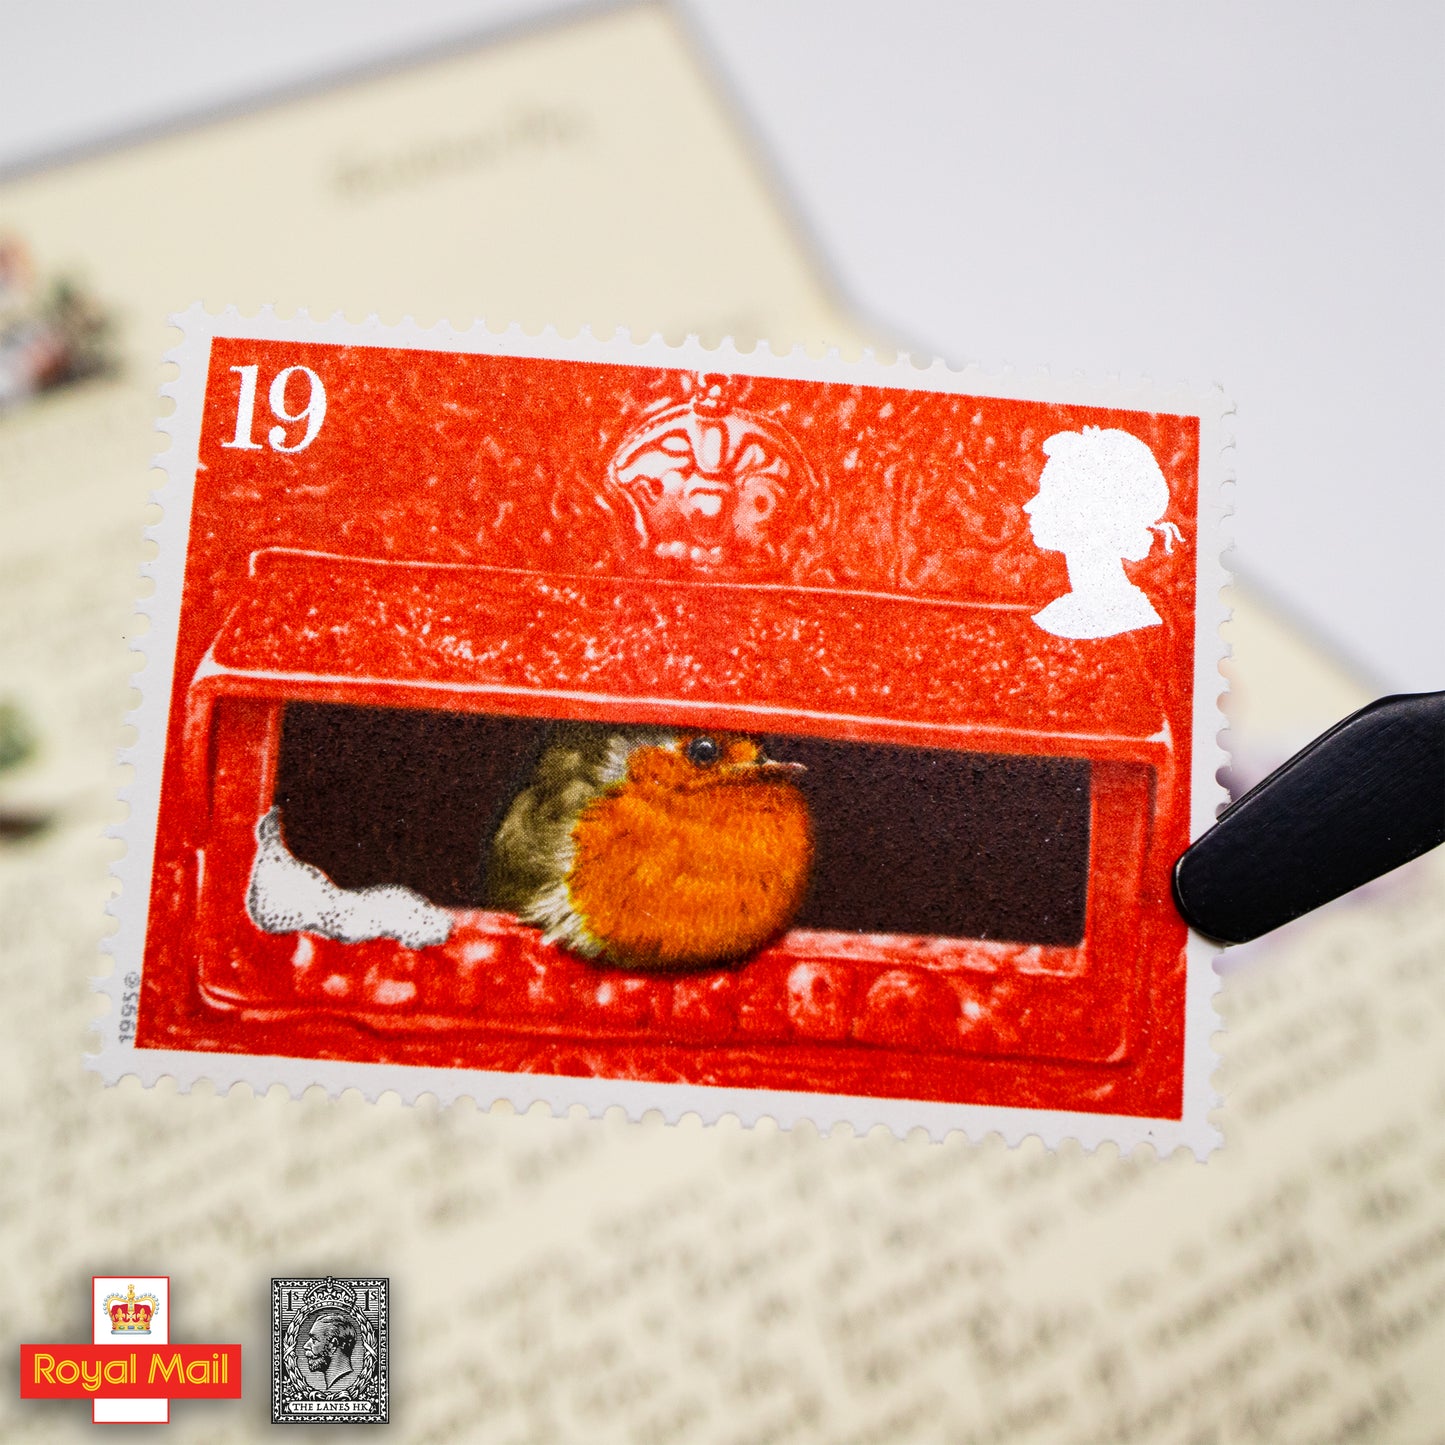 #262: 1995年 聖誕節 紀念郵票展示包